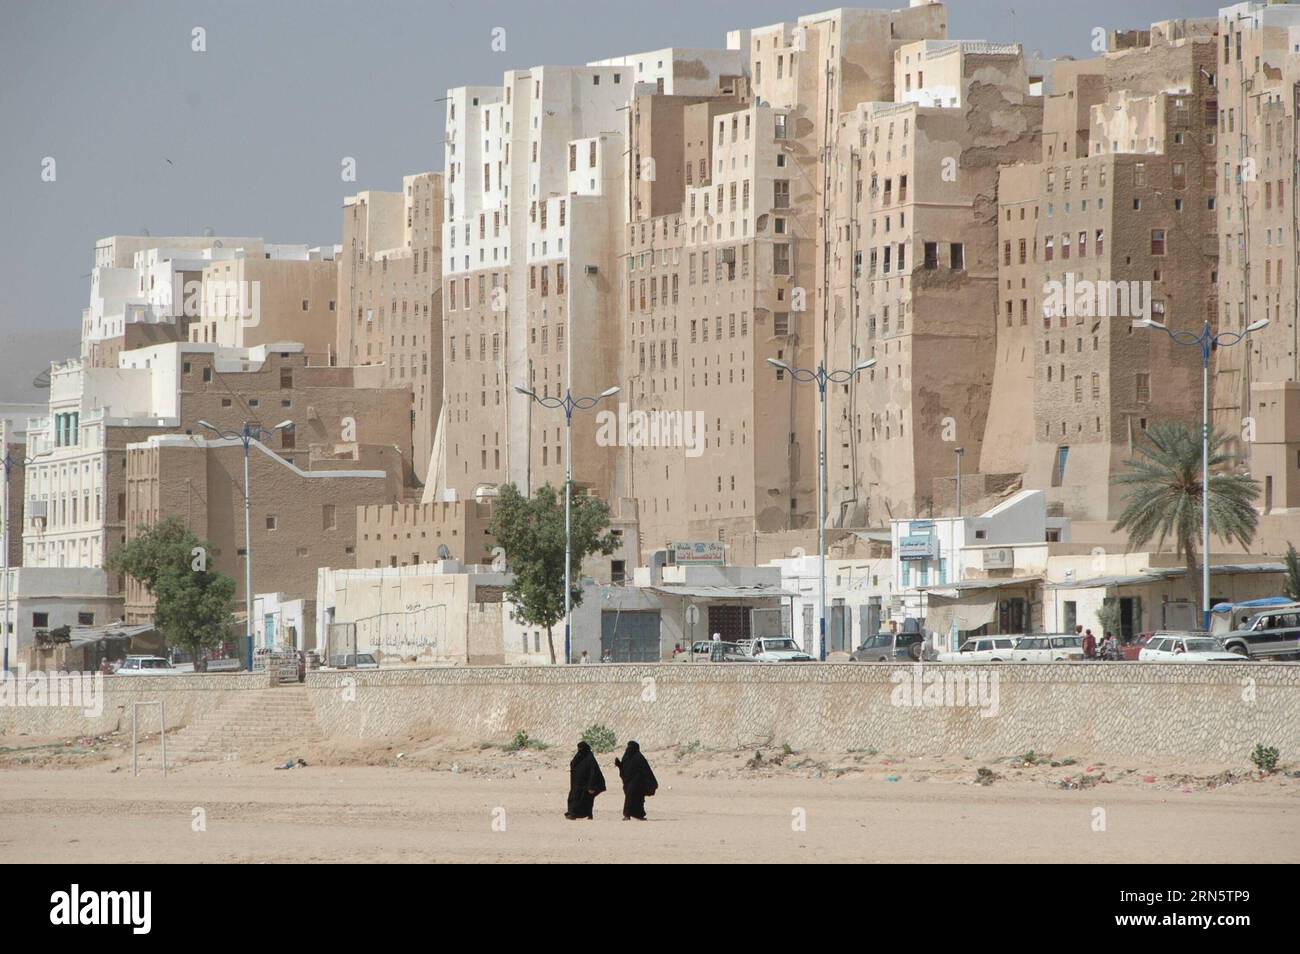 La foto scattata nel dicembre 2008 mostra la vecchia città murata di Shibam nello Yemen. L'Organizzazione delle Nazioni Unite per l'istruzione, la scienza e la cultura (UNESCO) ha completato il suo aggiornamento annuale dell'elenco dei patrimoni mondiali in pericolo il 2 luglio e ha aggiunto tre siti in zone conflittuali, tra cui la città vecchia di sana a e la città vecchia fortificata di Shibam nello Yemen e Hatra in Iraq, nella lista. )(azp) YEMEN-SHIBAM-VECCHIA CITTÀ MURATA-Unesco-A RISCHIO DI ESTINZIONE LixTeng PUBLICATIONxNOTxINxCHN file foto scattata nel dicembre 2008 mostra la vecchia città murata di Shibam nello Yemen, la scuola scientifica delle Nazioni Unite e Foto Stock